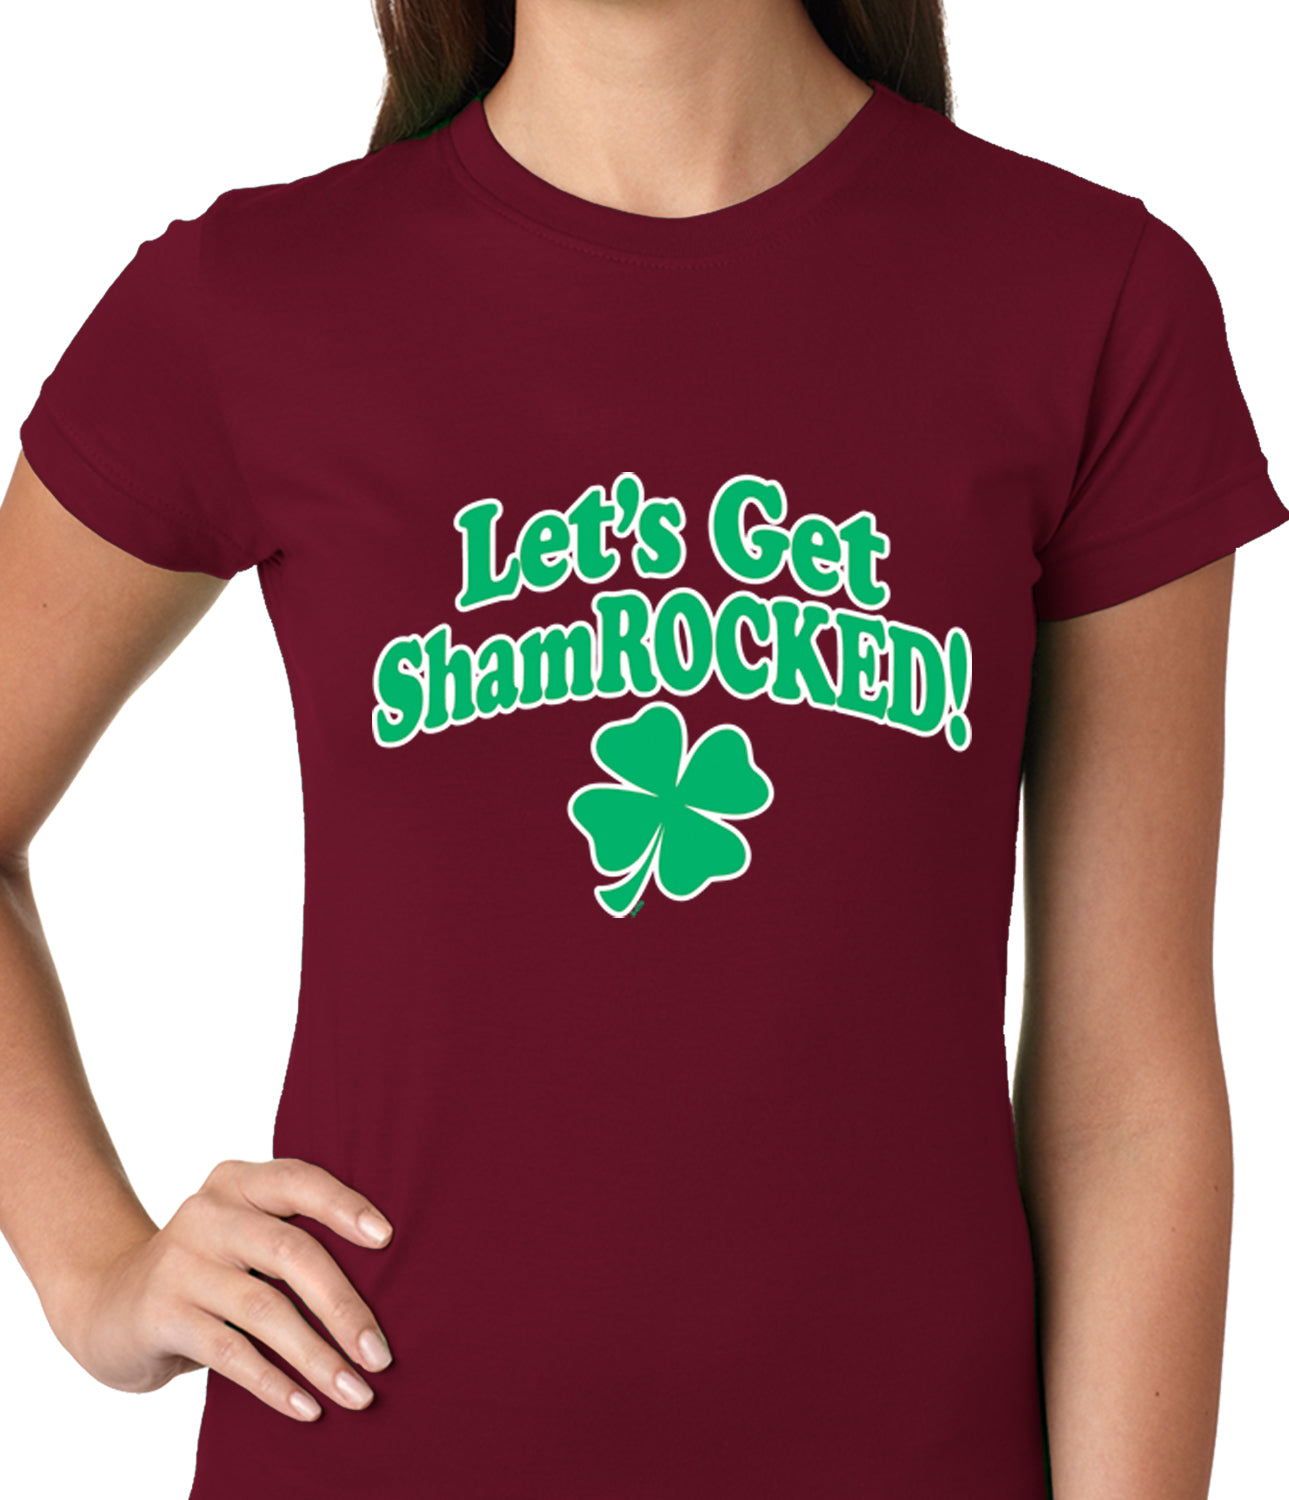 Let's Get ShamROCKED Funny Irish Ladies T-shirt Brown